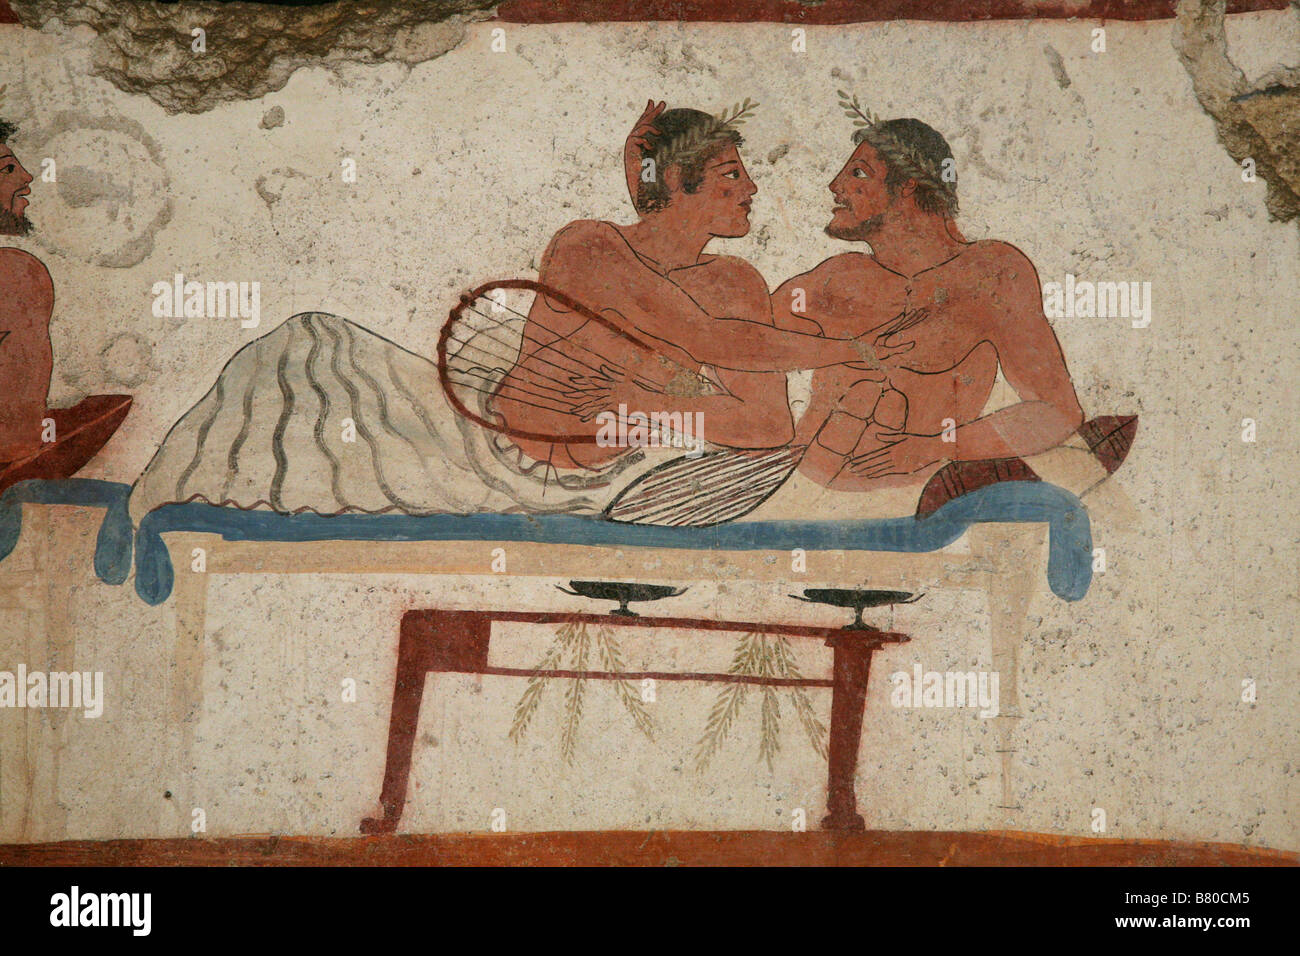 Colloque antique. À partir de la fresque de la Tombe du Plongeur dans le musée archéologique de Paestum, Italie. Banque D'Images